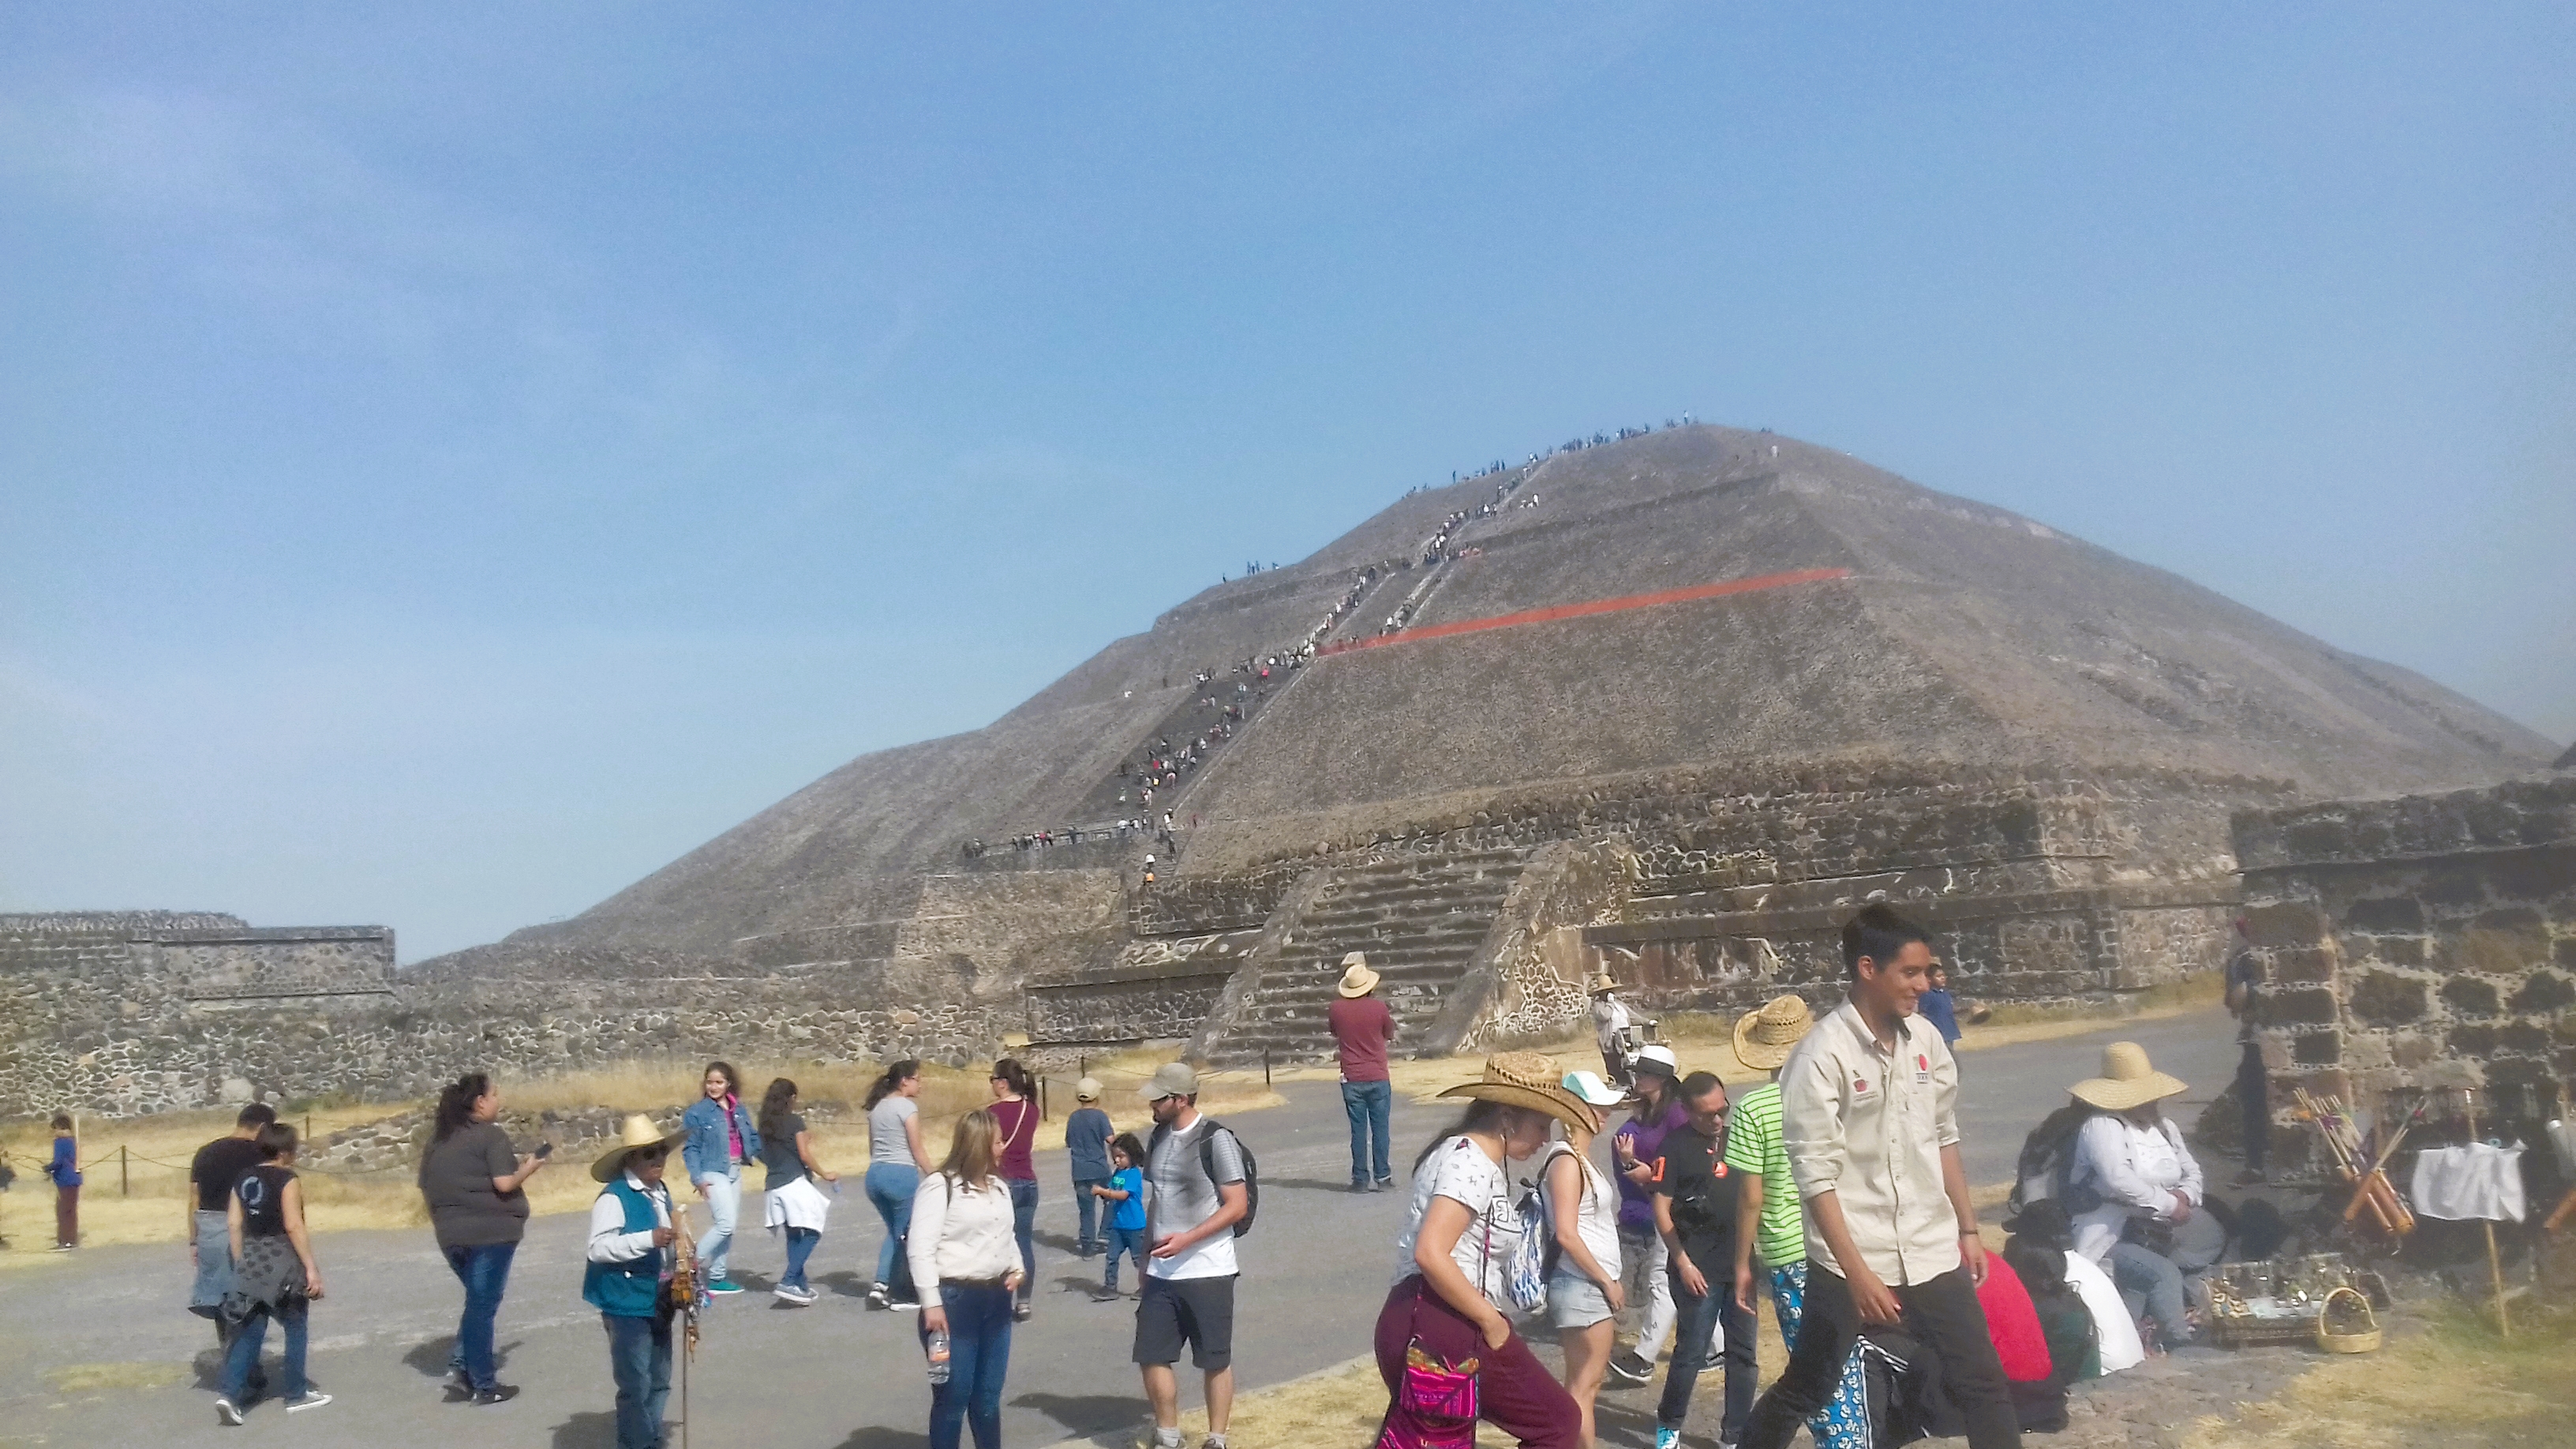 Cual es la piramide mas grande del mundo